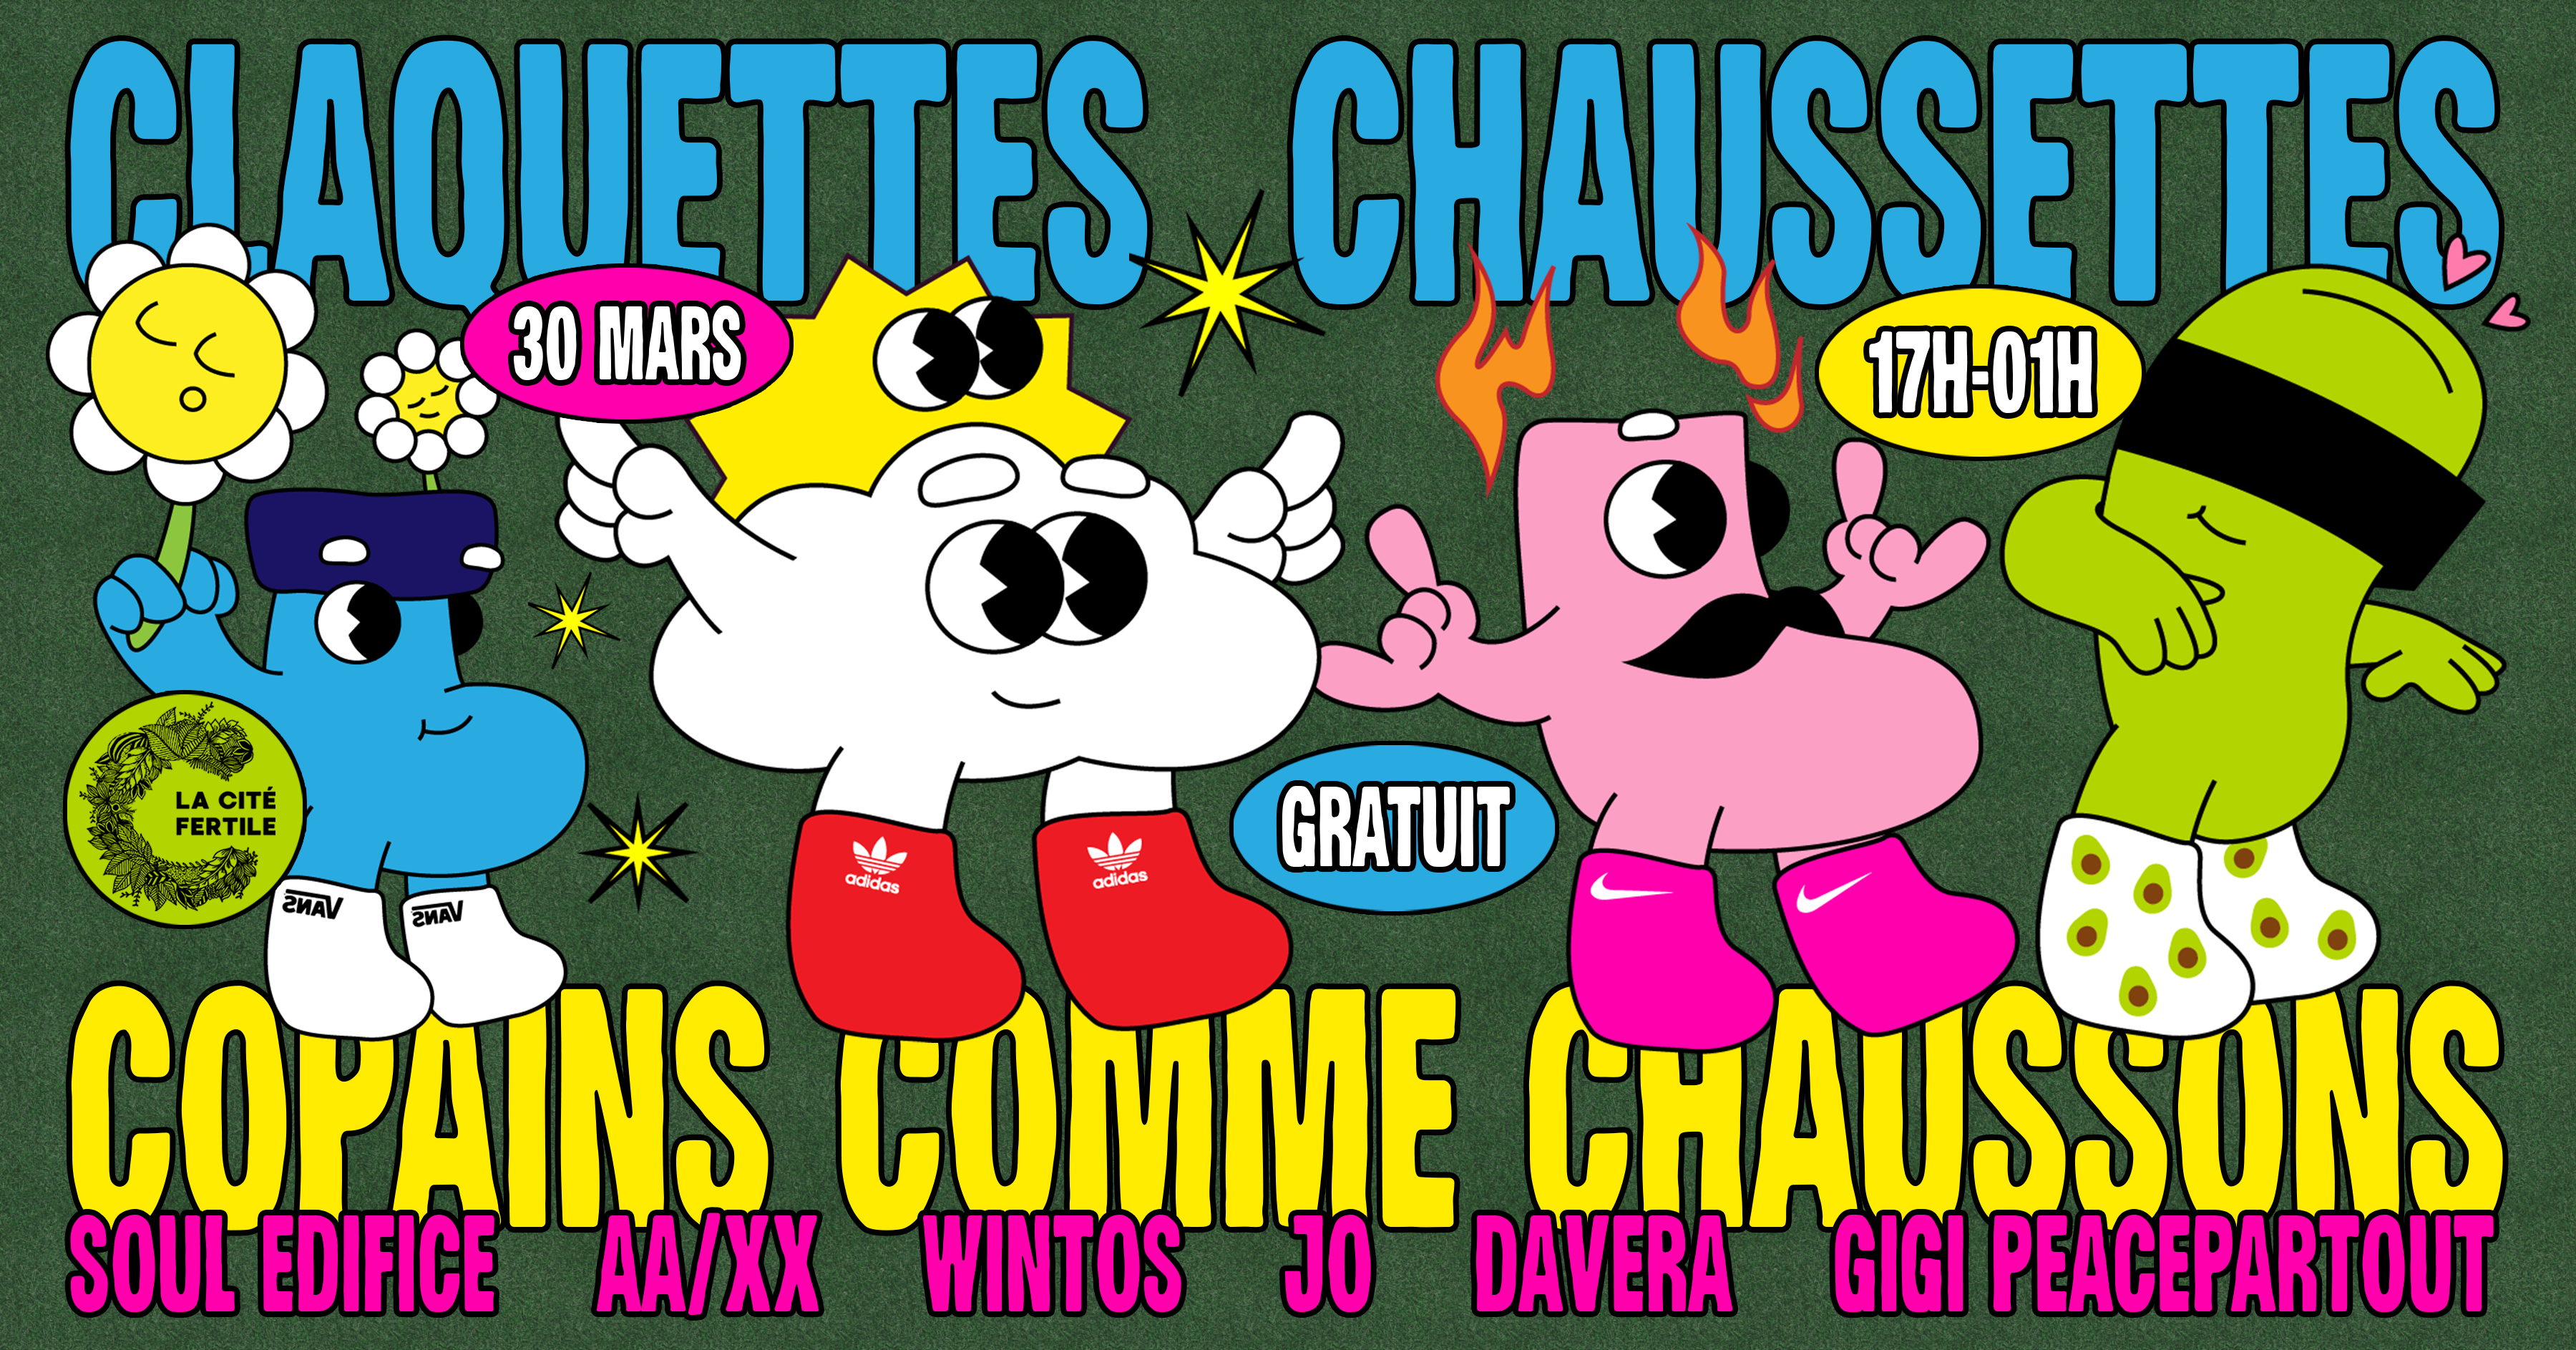 Claquettes Chaussettes X la Cité Fertile : copains comme chaussons